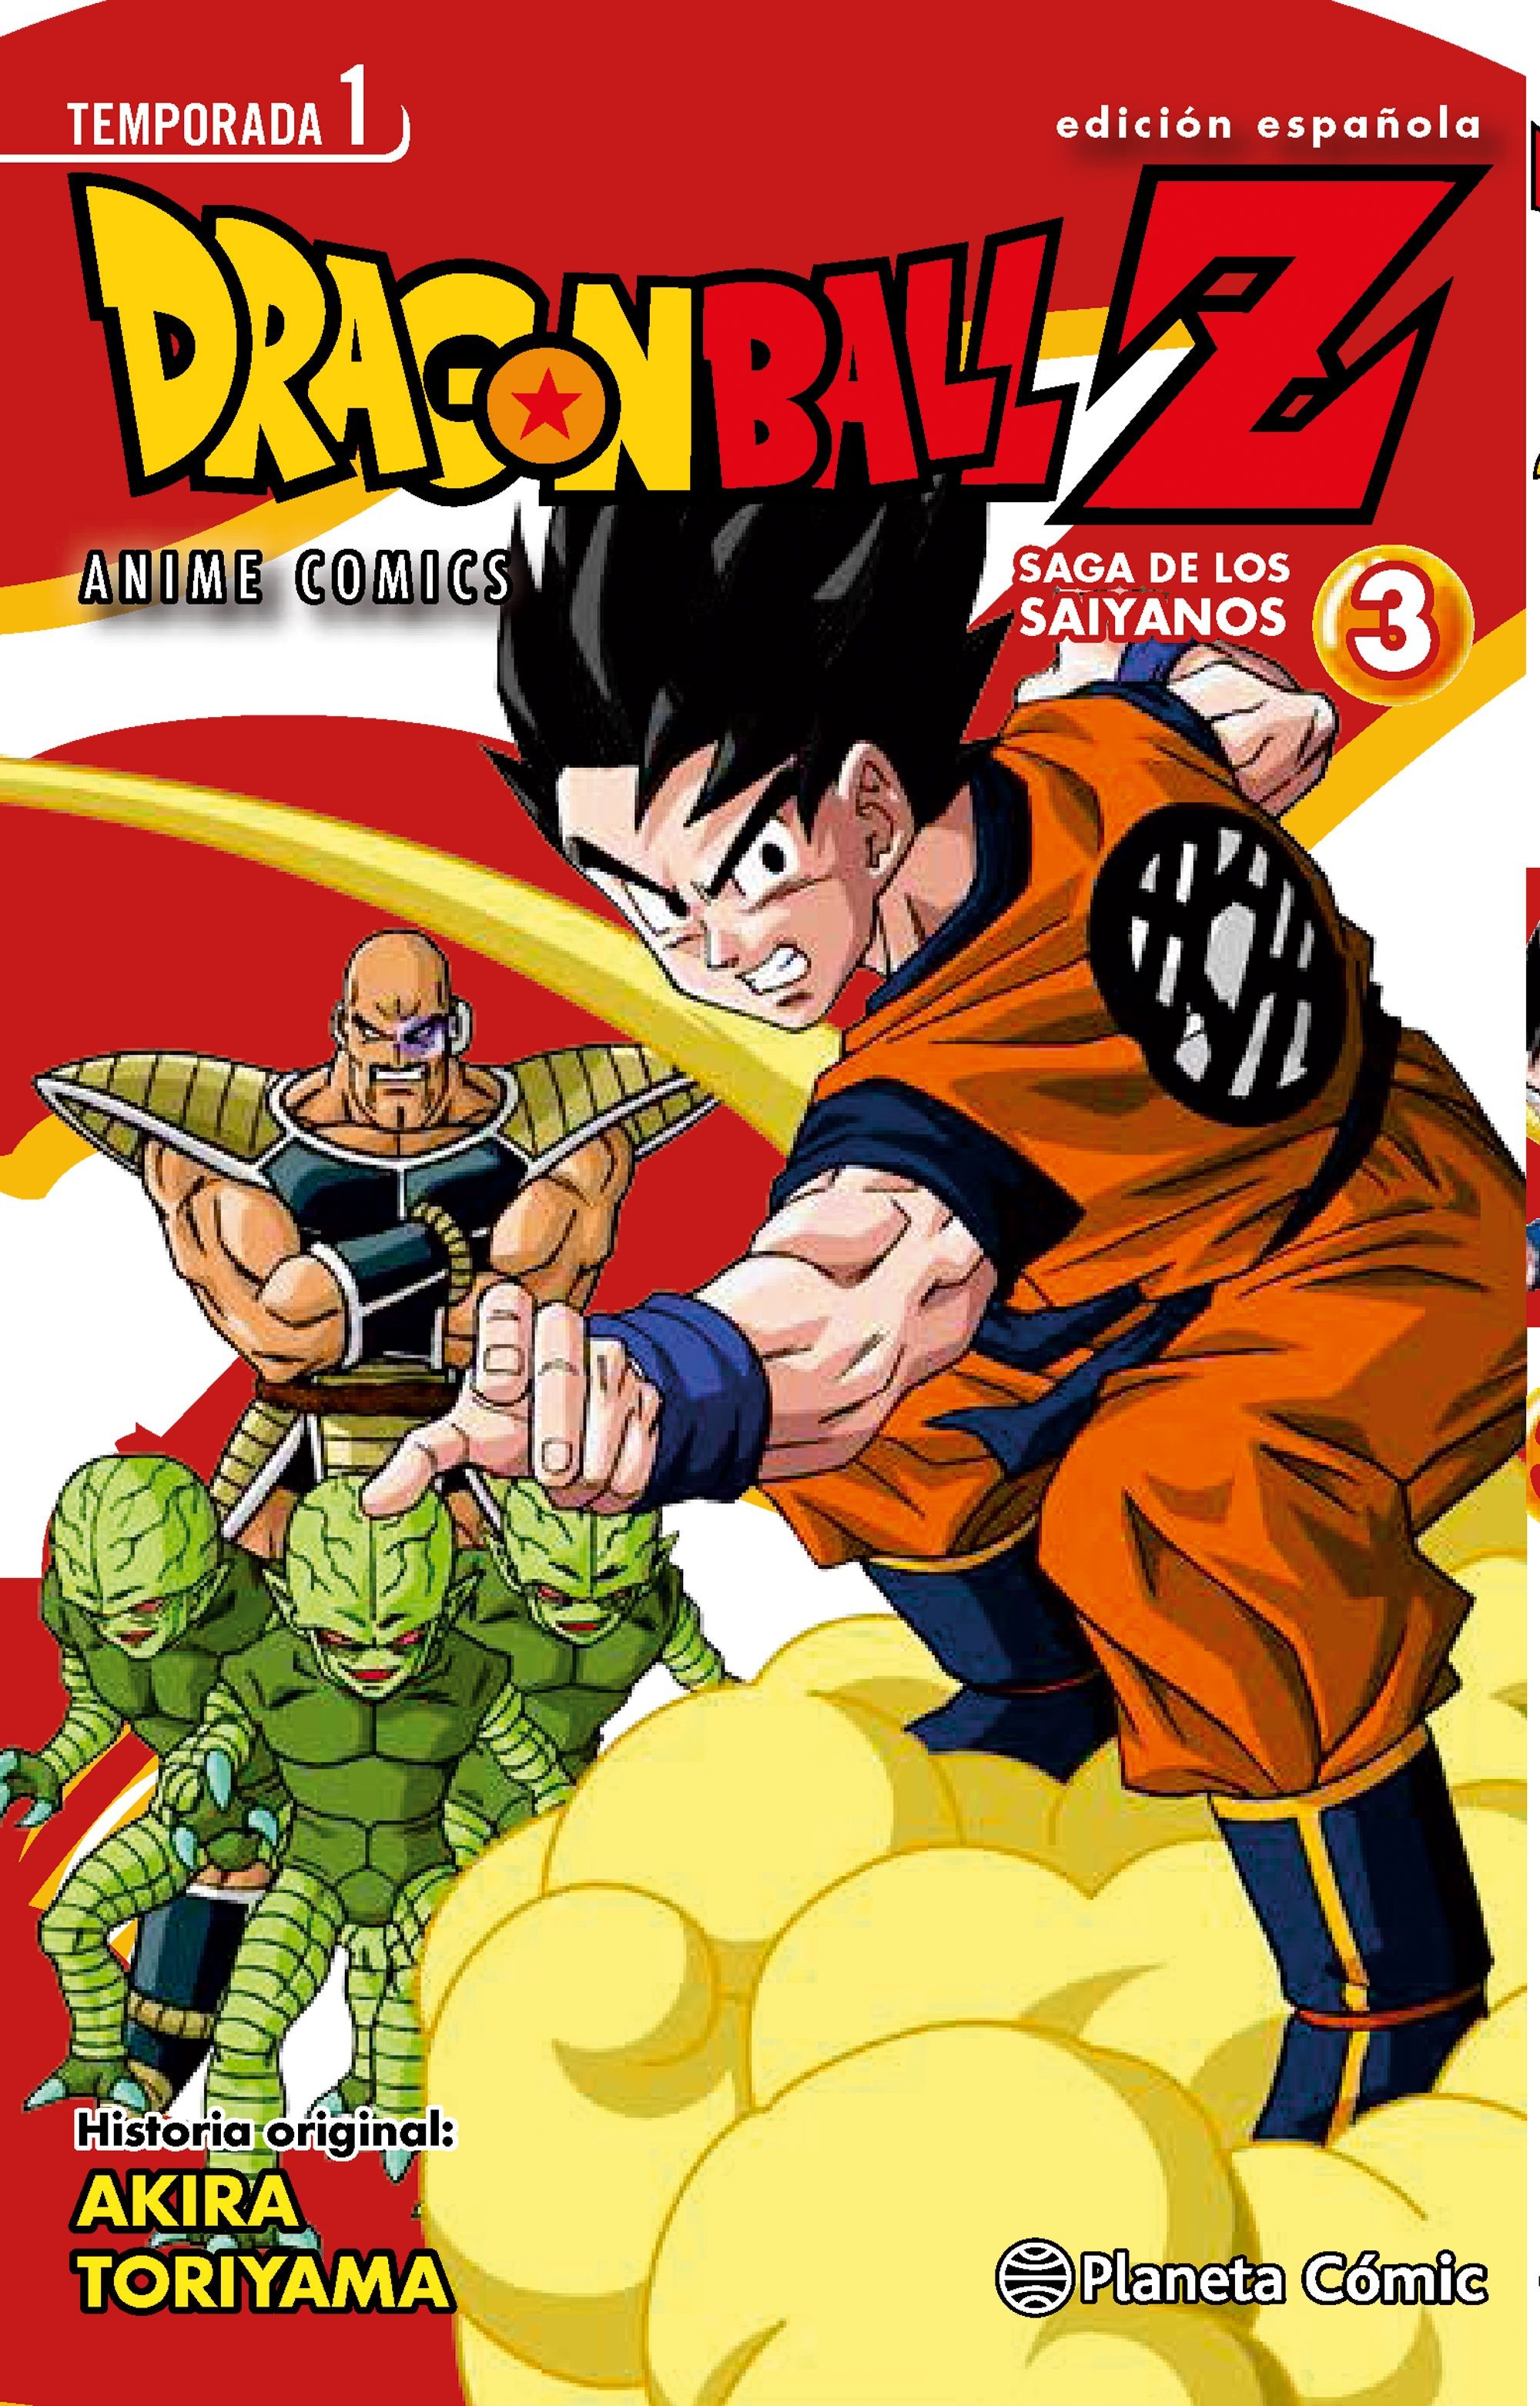 Dragon Ball Z Anime Series Saga de los Saiyanos 03 - Infinity Comics